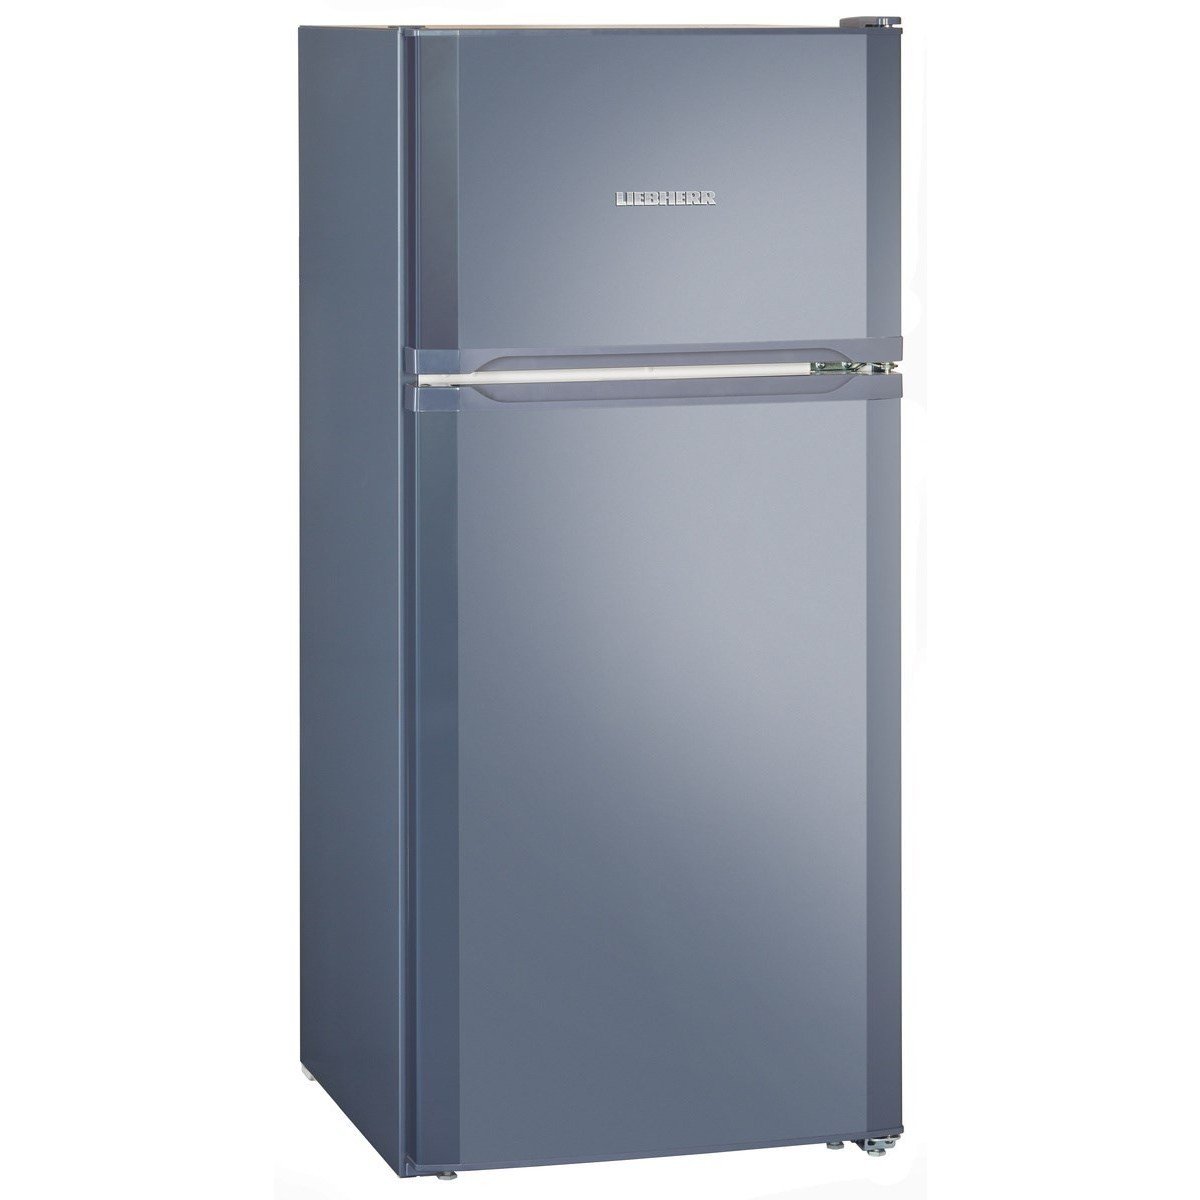 Купить холодильник с доставкой спб. Холодильник Liebherr с верхней морозильной камерой. Холодильник Liebherr CTP 2121. Холодильник Либхер синий. Холодильник Либхер голубой.